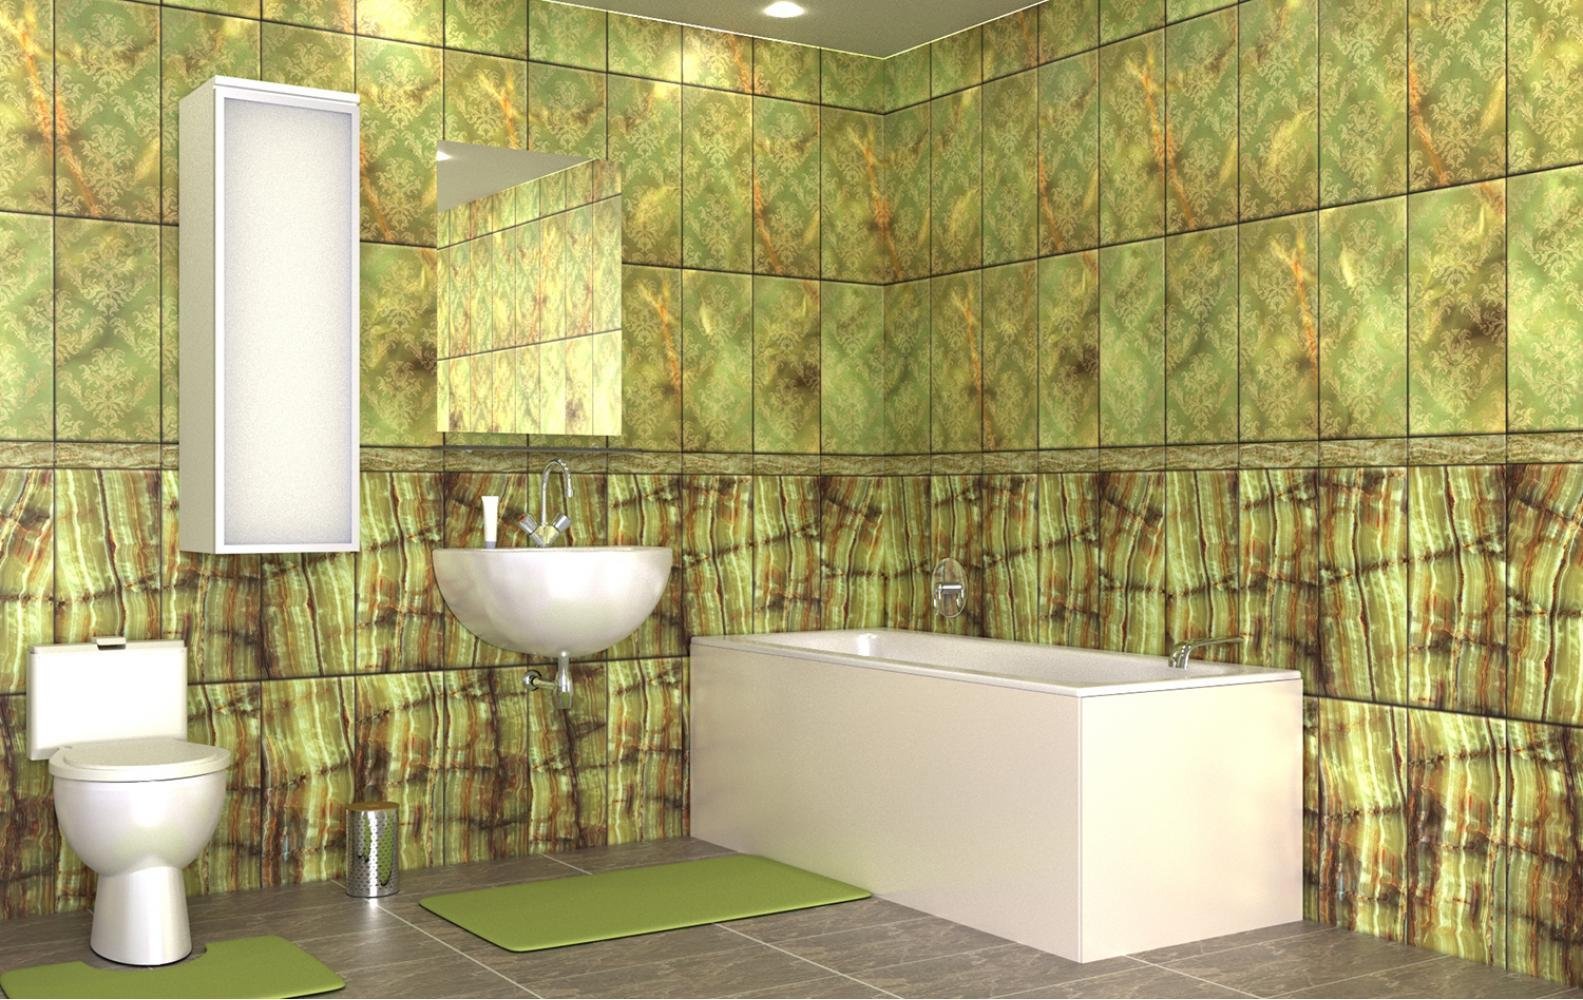 Панели в ванной отзывы. Панель ПВХ 3d век мозаика малахит. Панели для ванны. Влагостойкие панели. Влагостойкие стеновые панели для ванной.